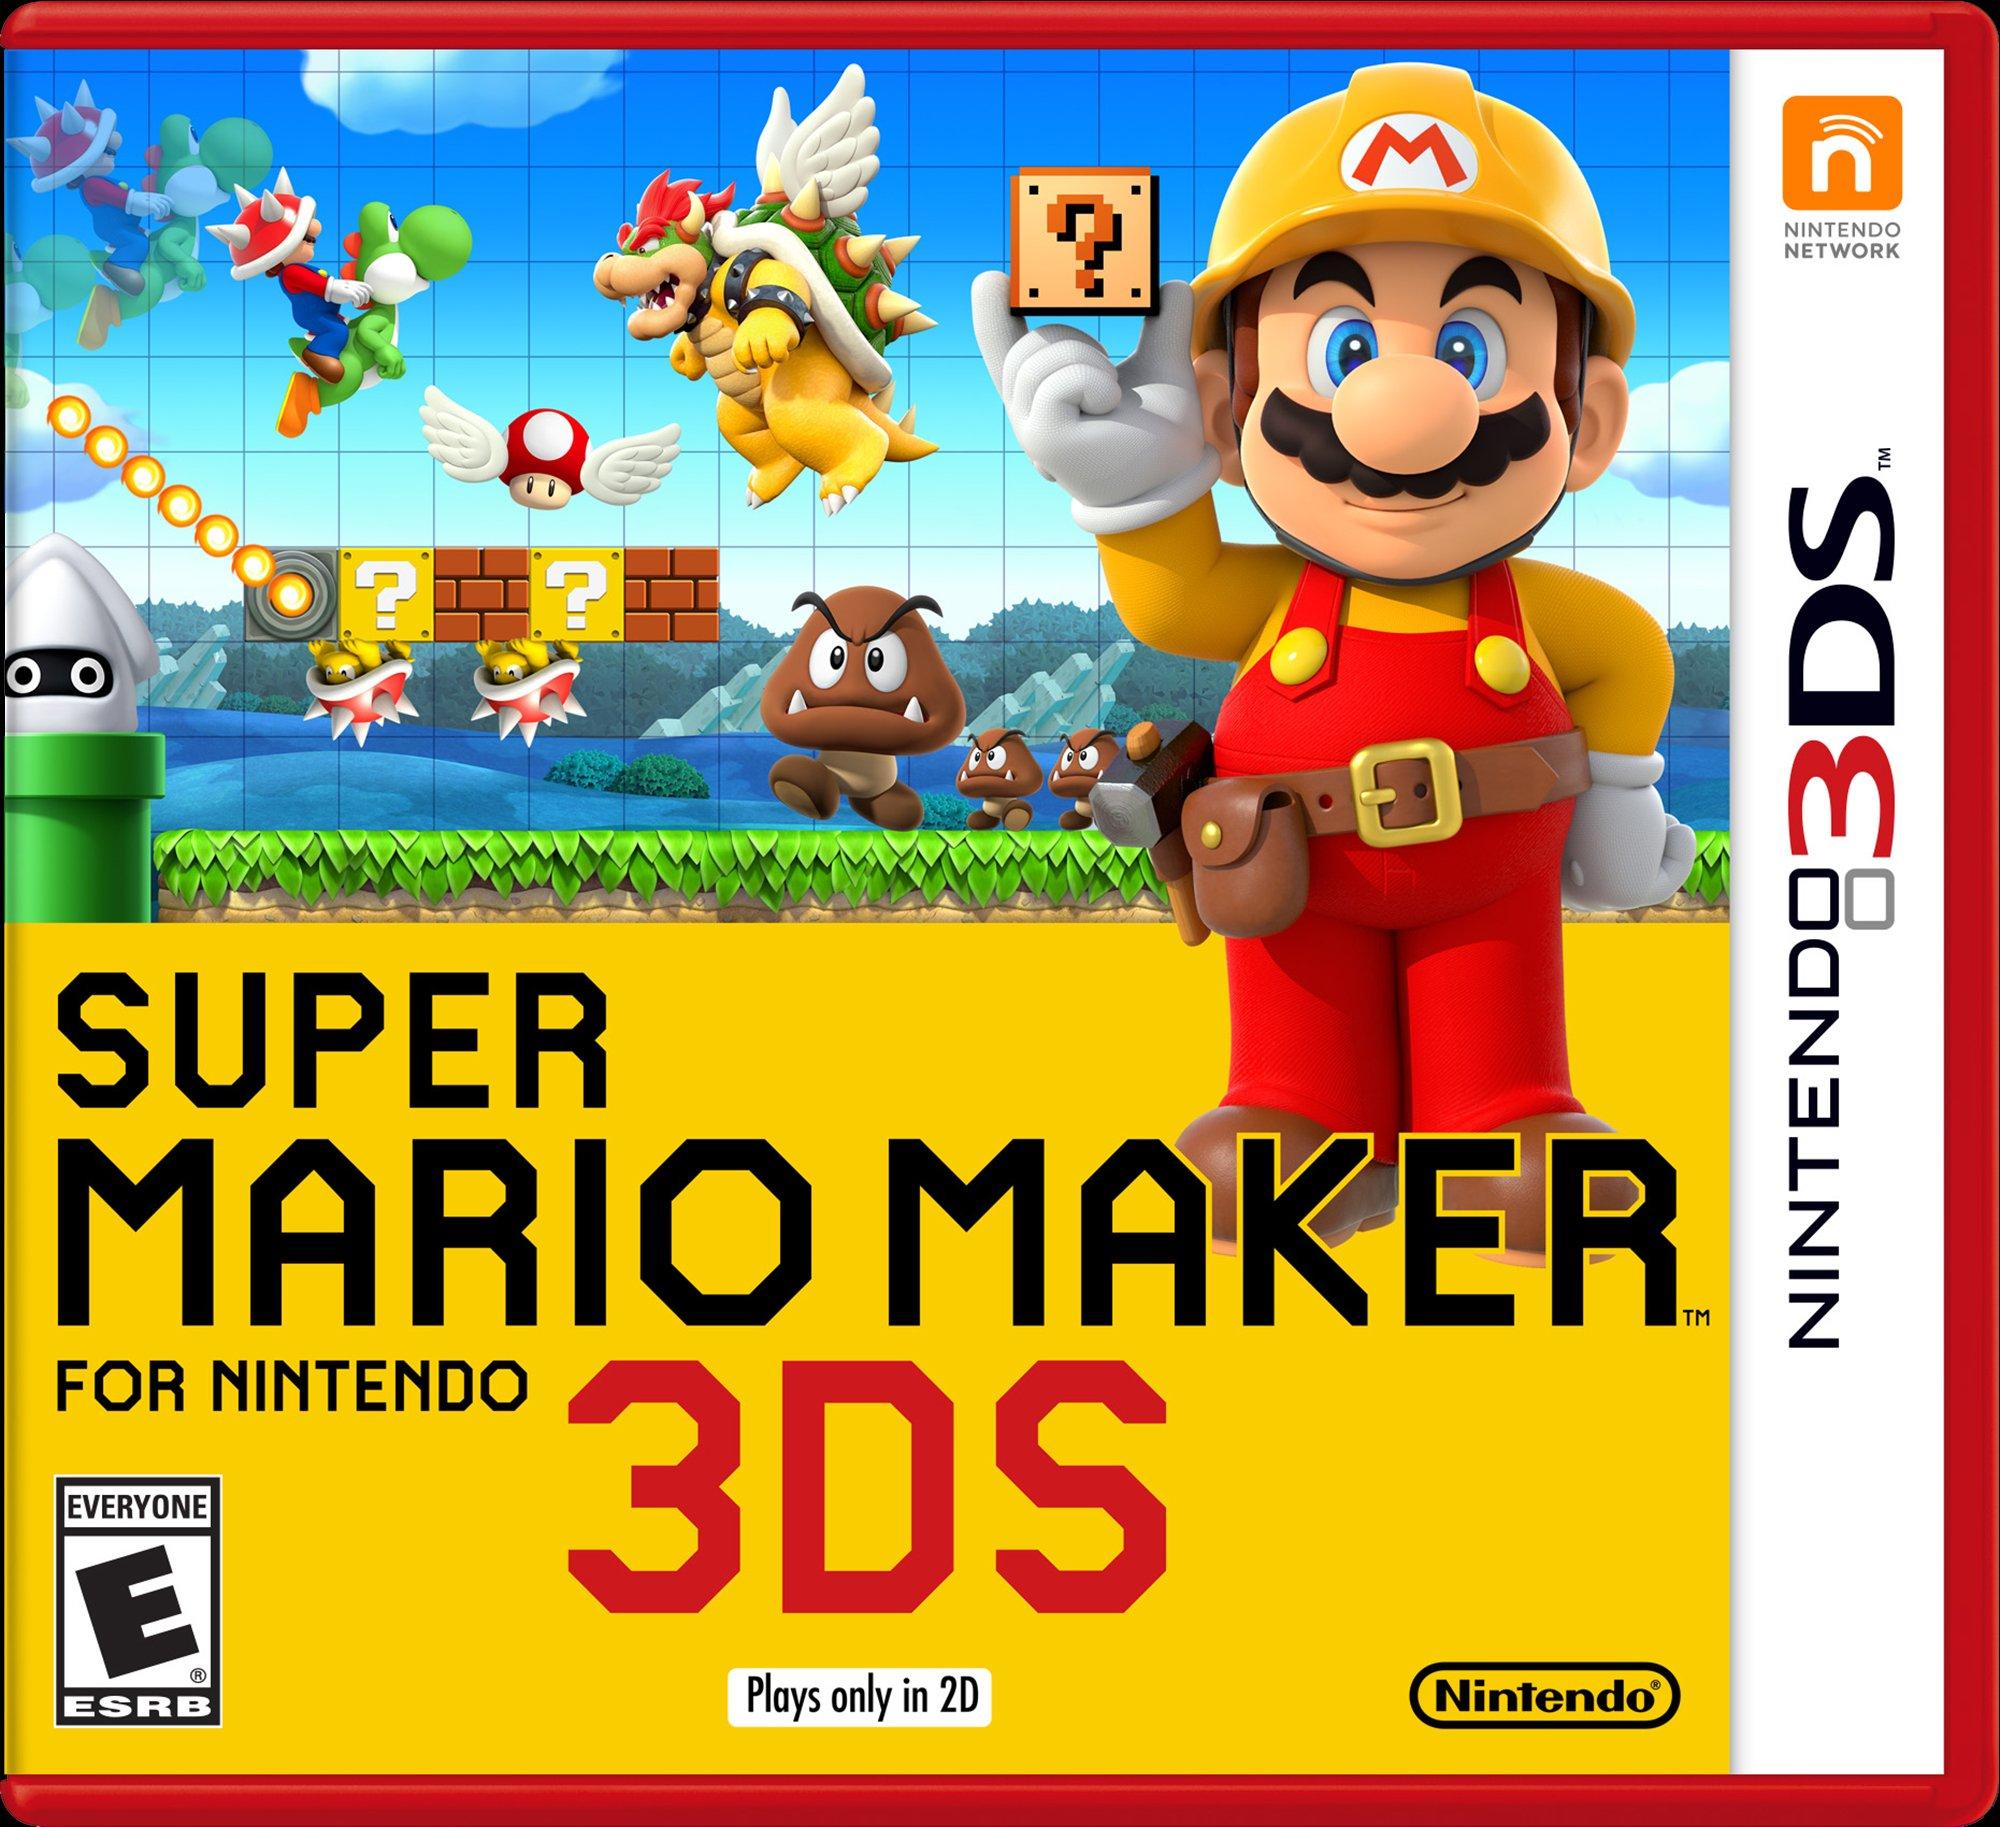 Pirat cement Isse Super Mario Maker for Nintendo 3DS - Nintendo 3DS | Nintendo 3DS | GameStop